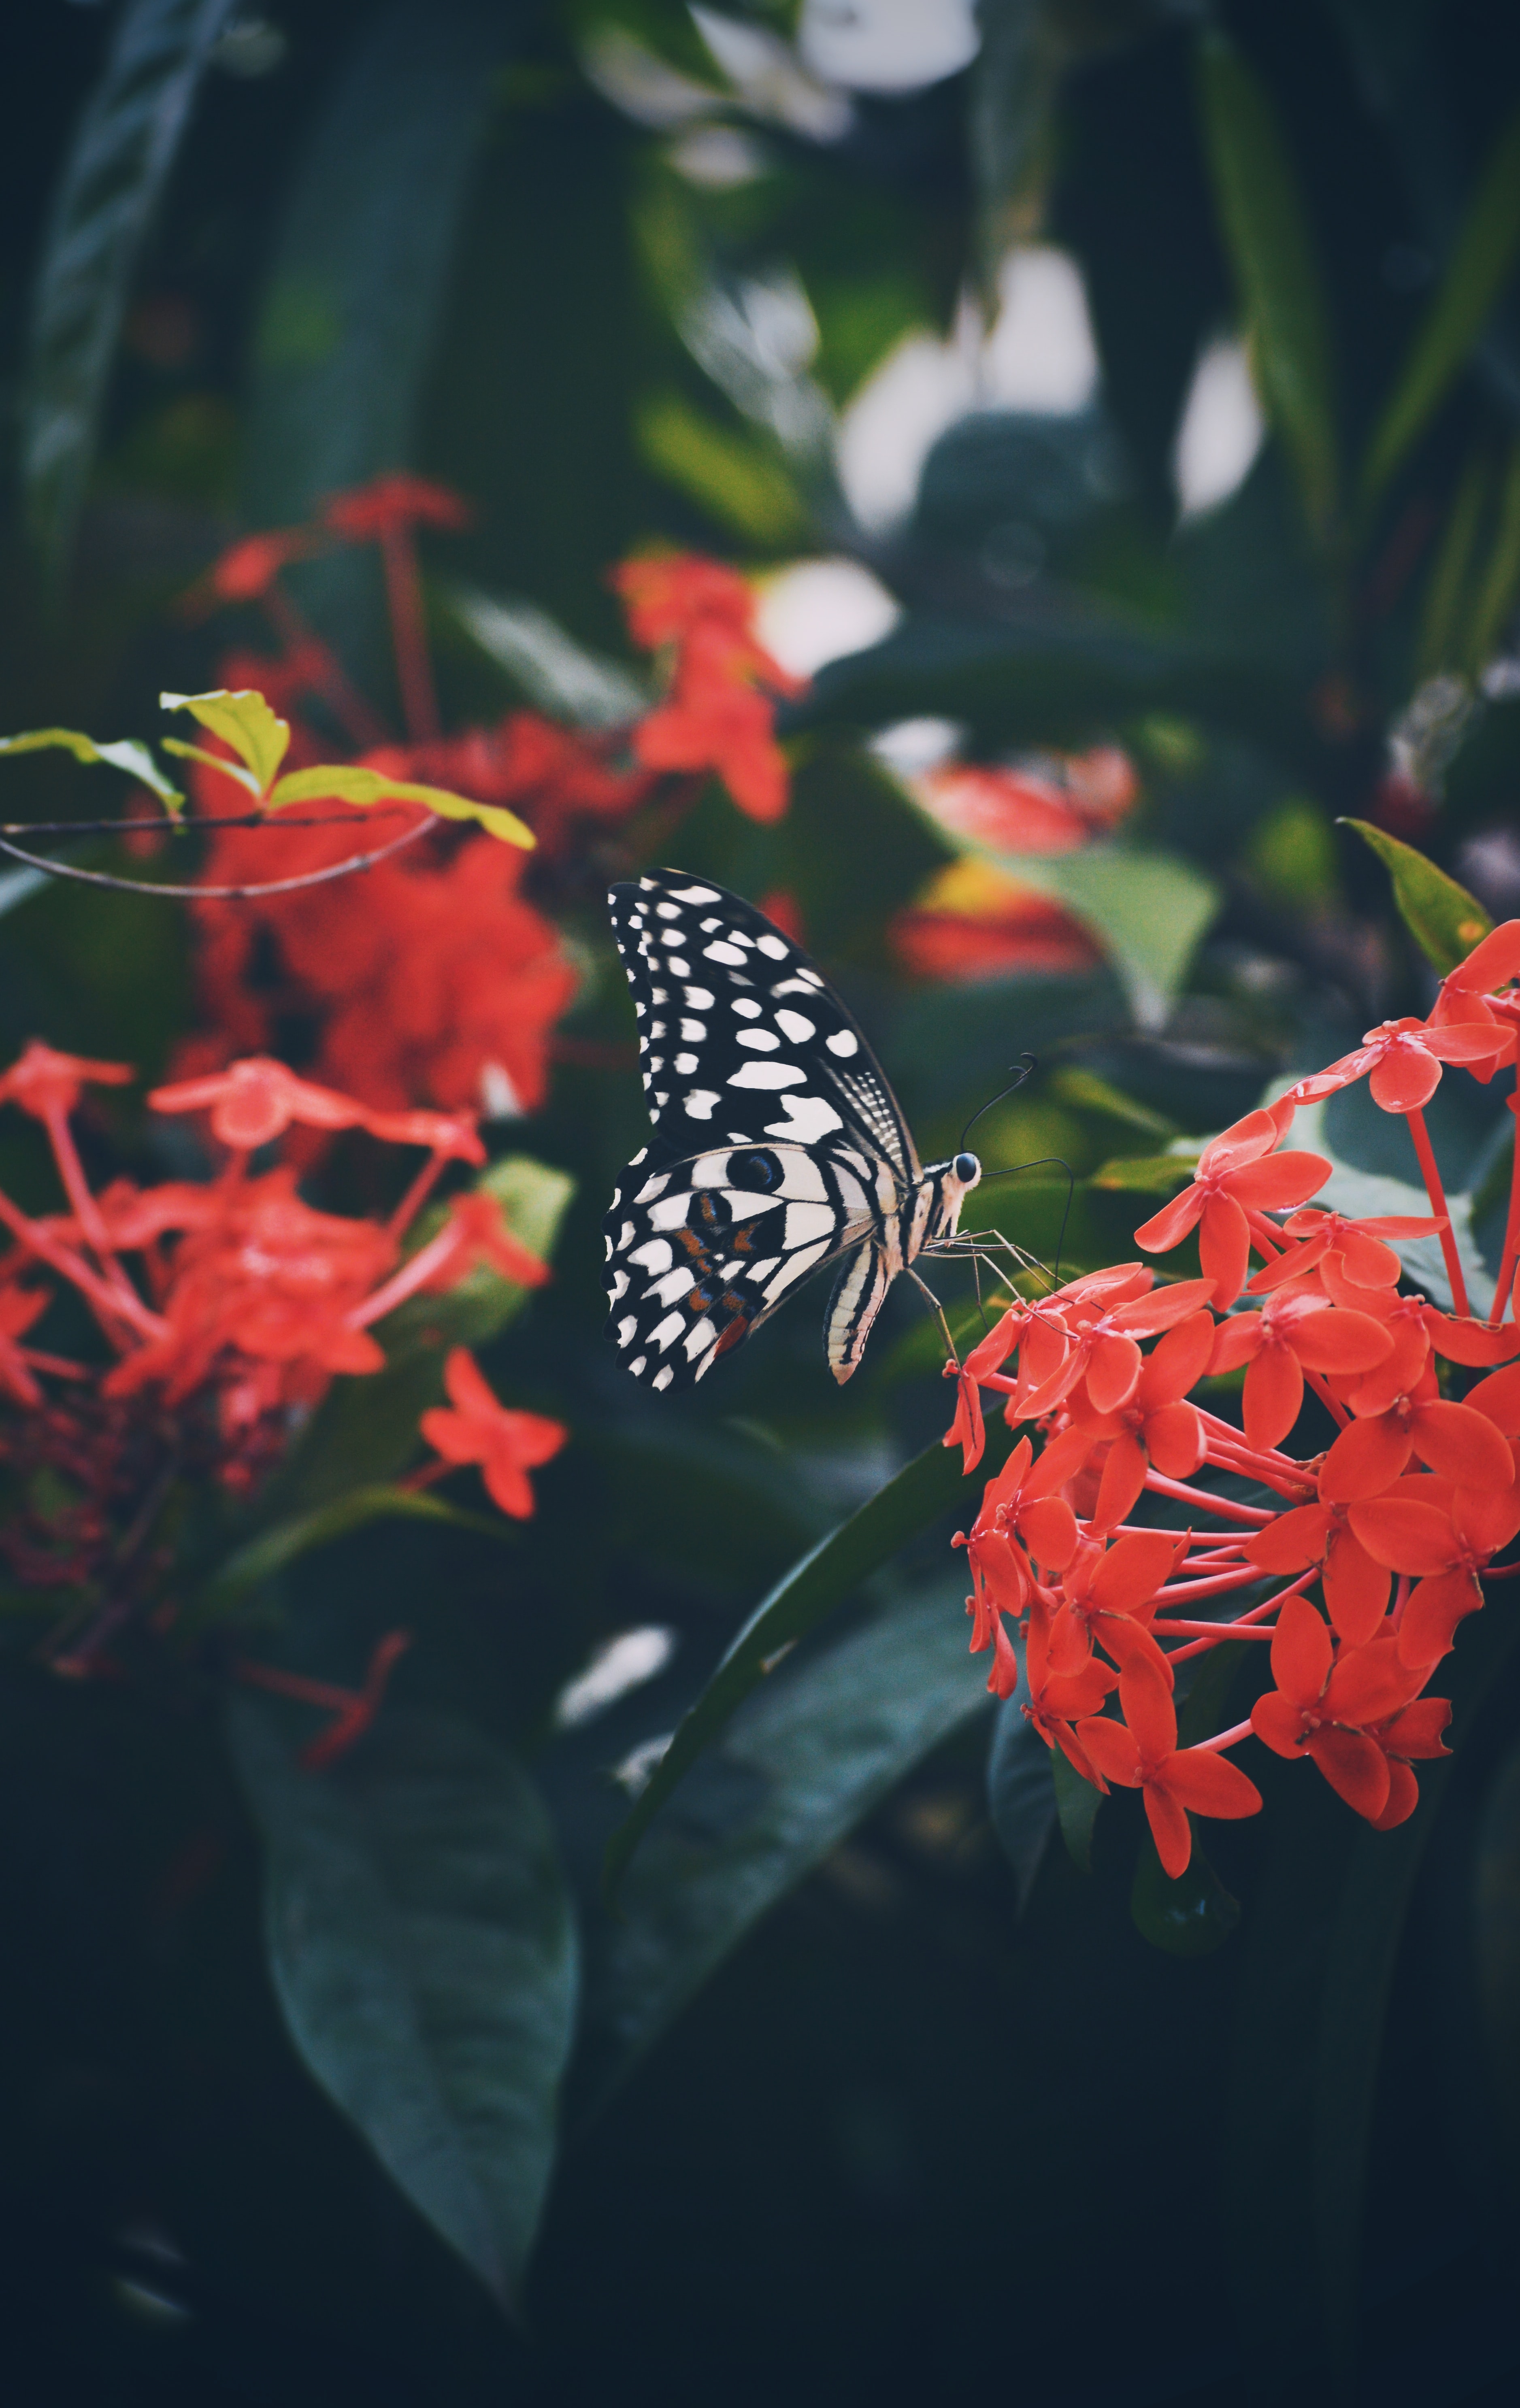 Скачать обои бесплатно Бабочка, Животные, Узор, Крылья, Цветок картинка на рабочий стол ПК